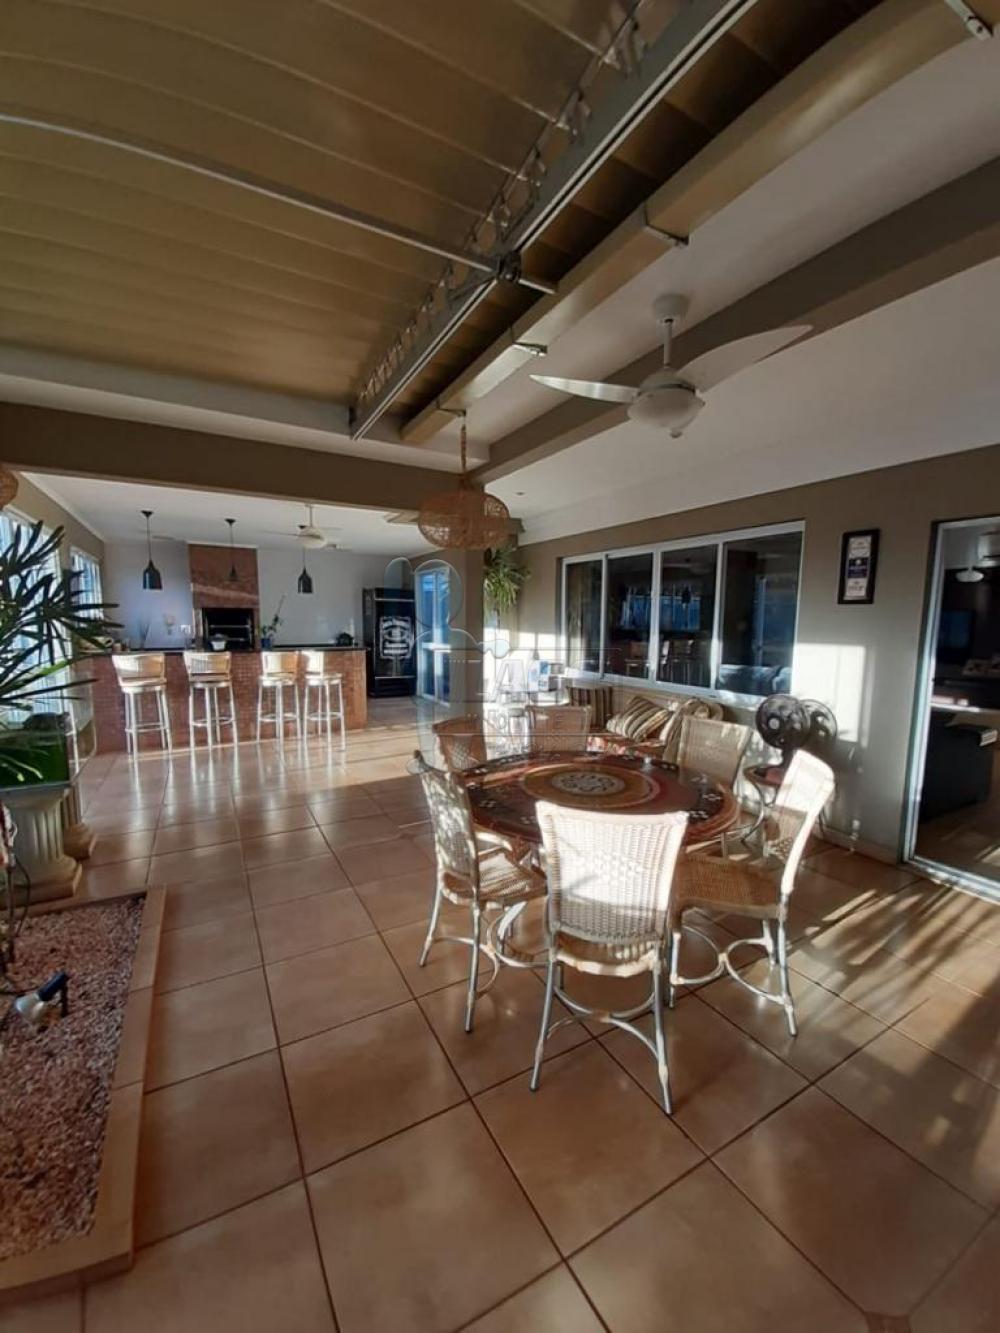 Comprar Casa condomínio / Padrão em Ribeirão Preto R$ 1.300.000,00 - Foto 13